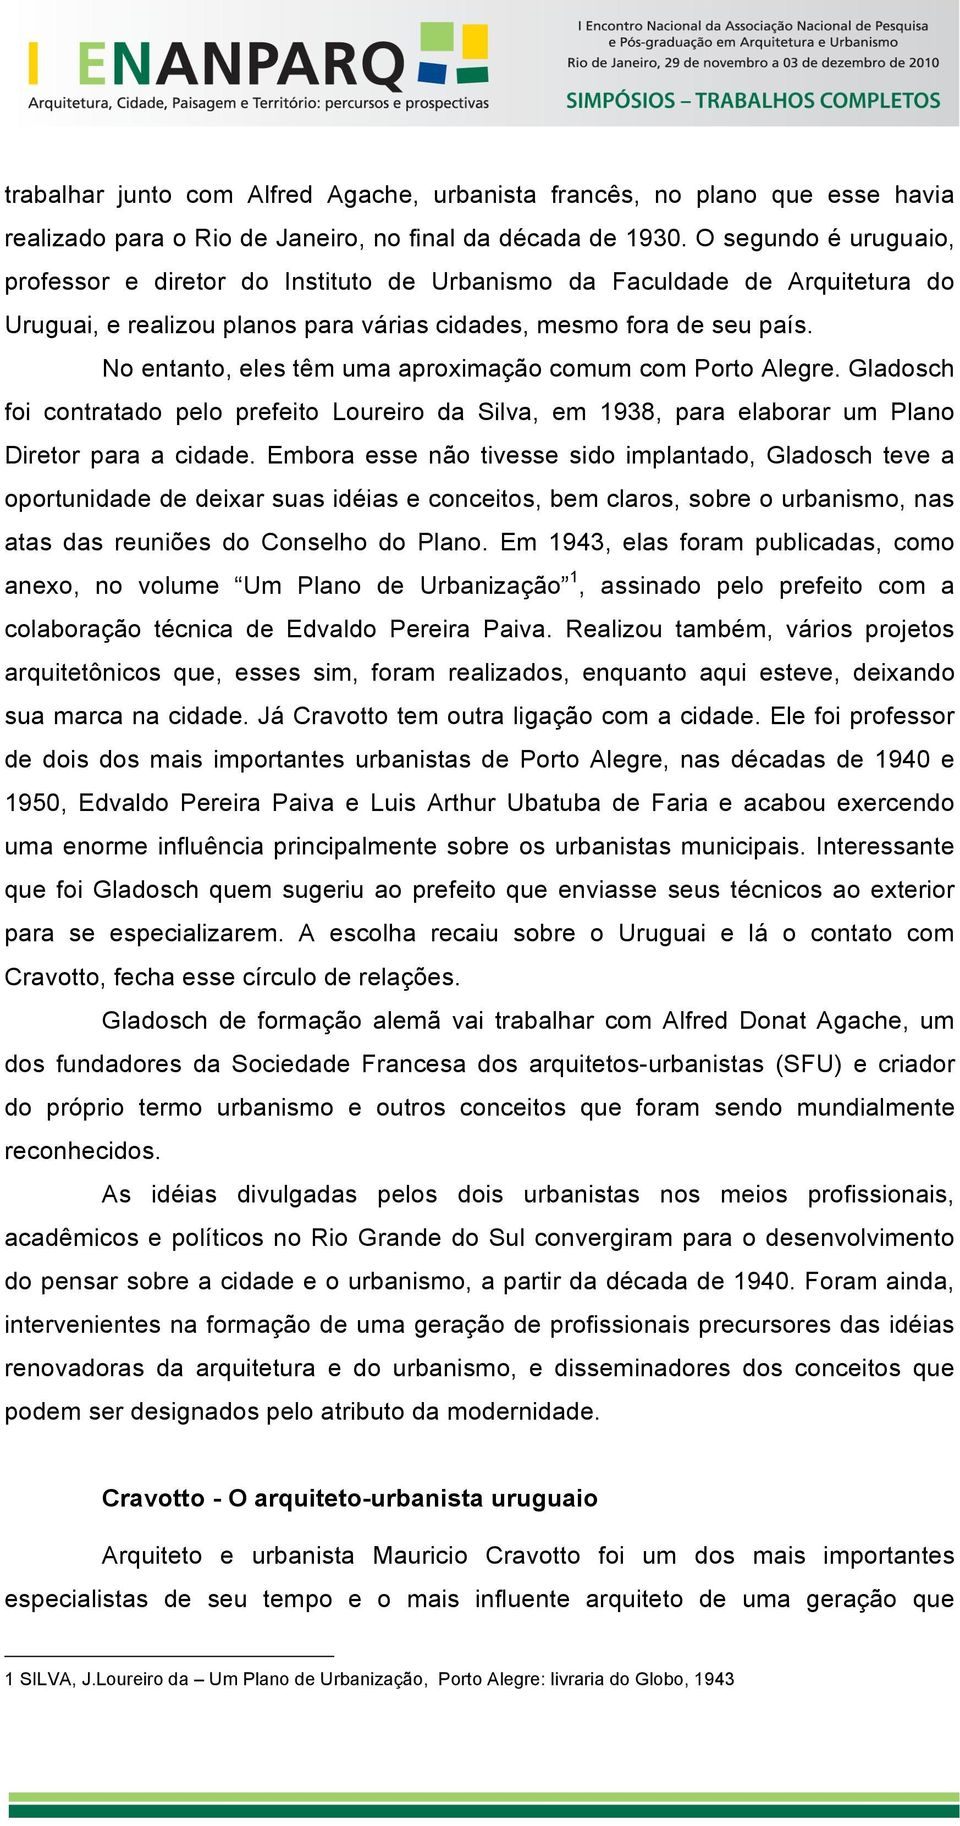 No entanto, eles têm uma aproximação comum com Porto Alegre. Gladosch foi contratado pelo prefeito Loureiro da Silva, em 1938, para elaborar um Plano Diretor para a cidade.